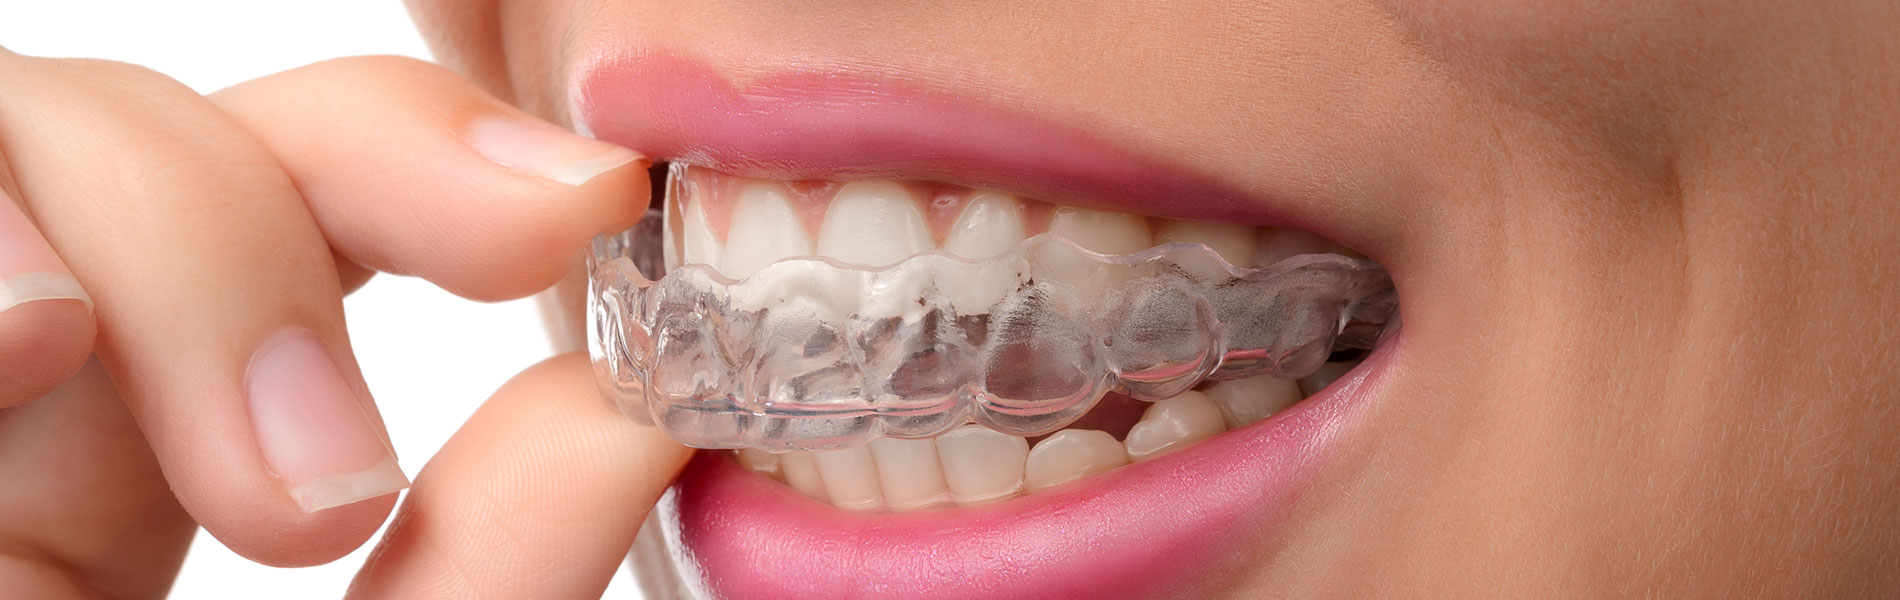 close na boca de uma mulher que veste um aparelho ortodôntico transparente